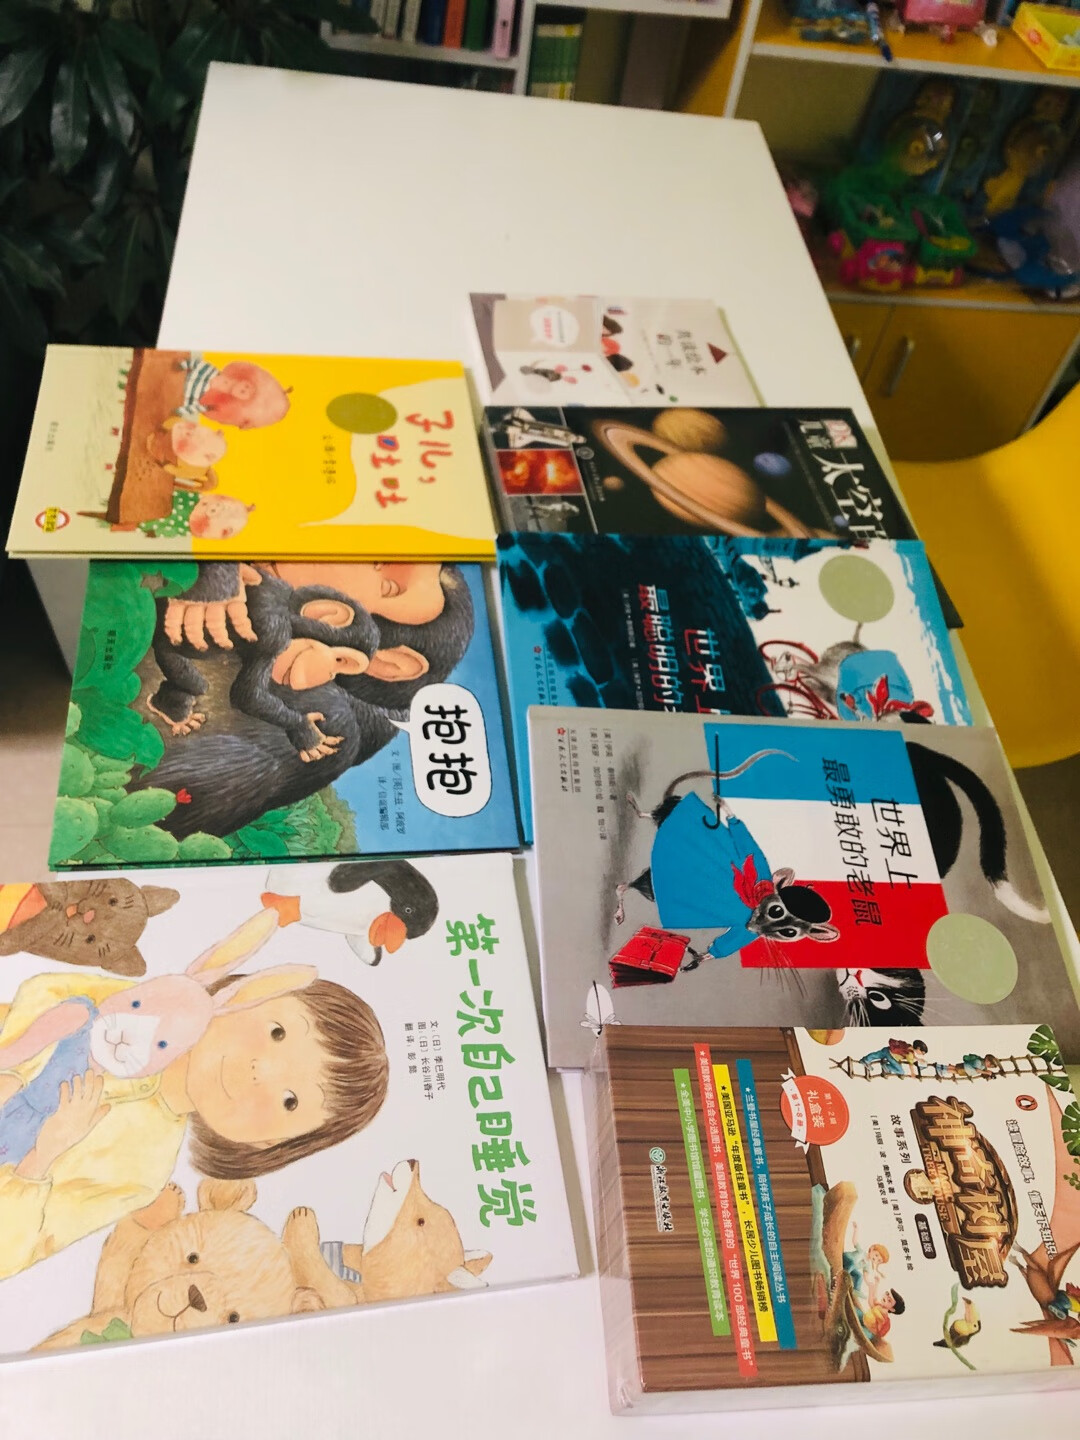 以前买过英文版的给小朋友读，这个中文版的放在学校大家也看得很开心。很有意思的书，等大家英文阅读能力足够了就可以看英文版的啦